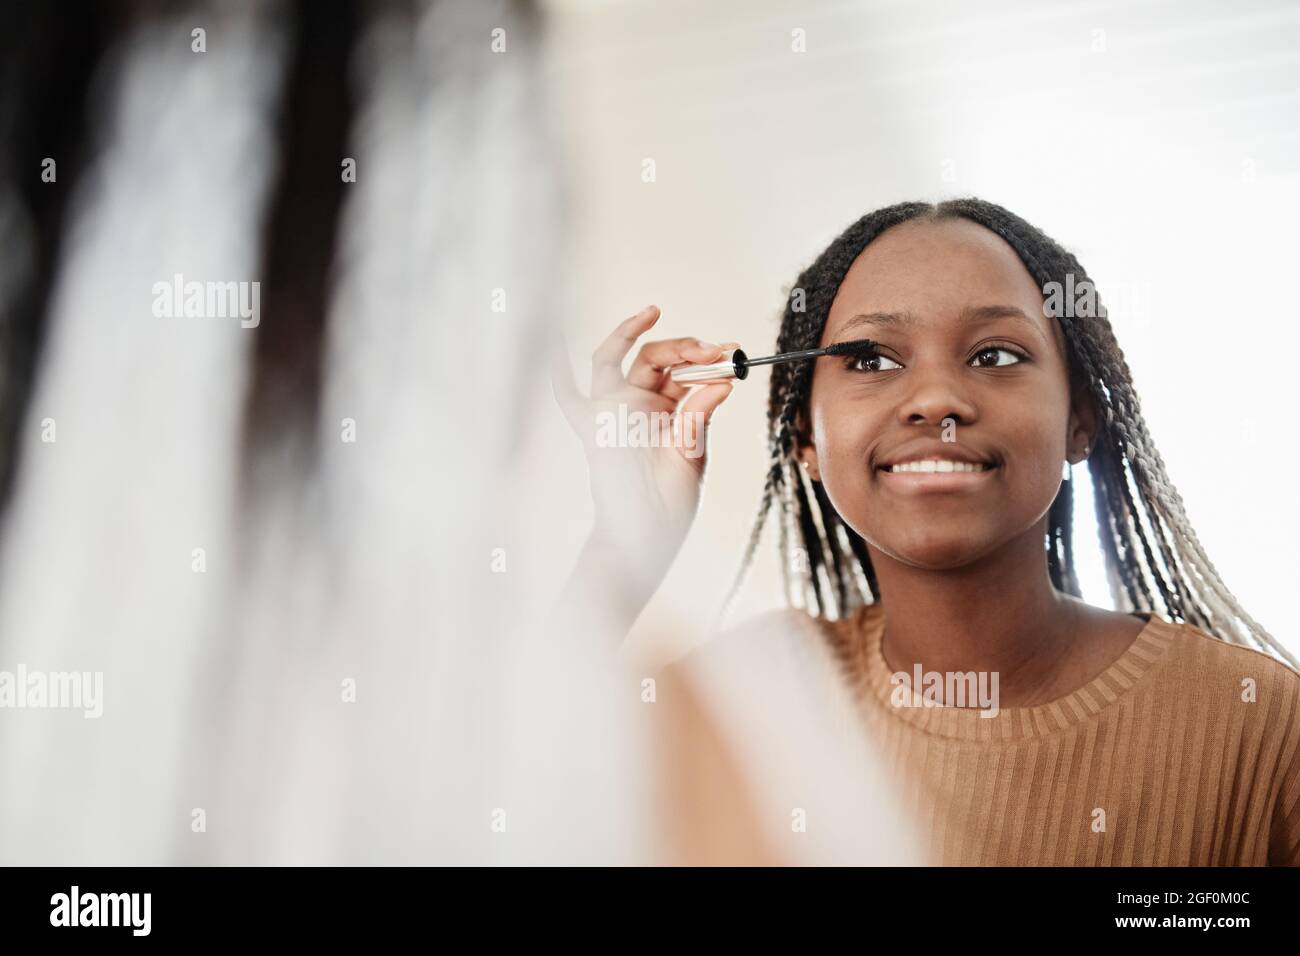 Porträt einer jungen afroamerikanischen Frau, die morgens Mascara aufsetzt, während sie sich schminkt und den Spiegel und den Kopierraum anschaut Stockfoto